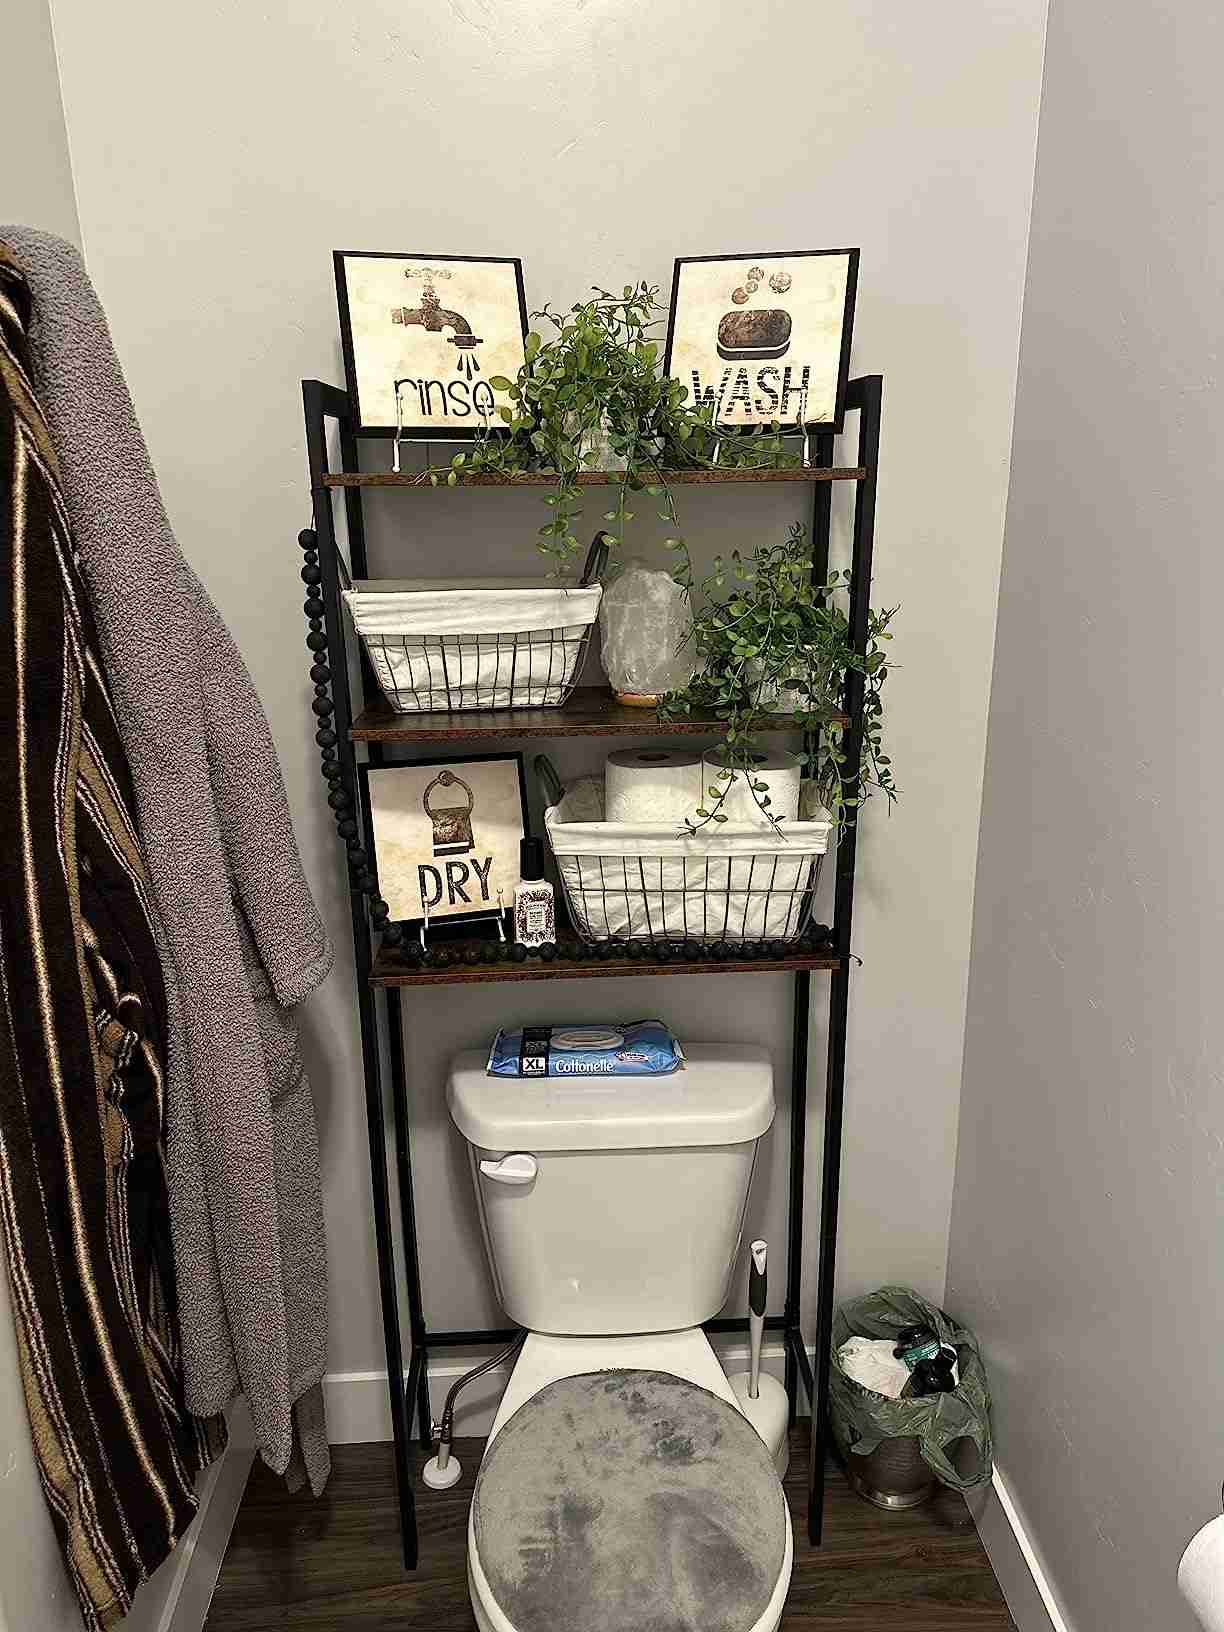 БФ41ТС01 3 Tier Bathroom Shelf Over Toilet photo review